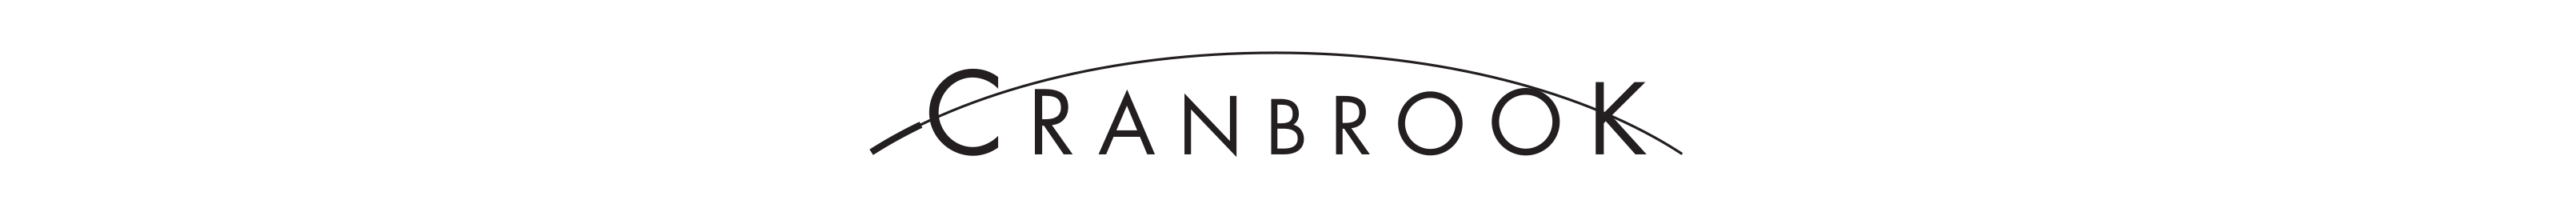 Cranbrook Schools logo